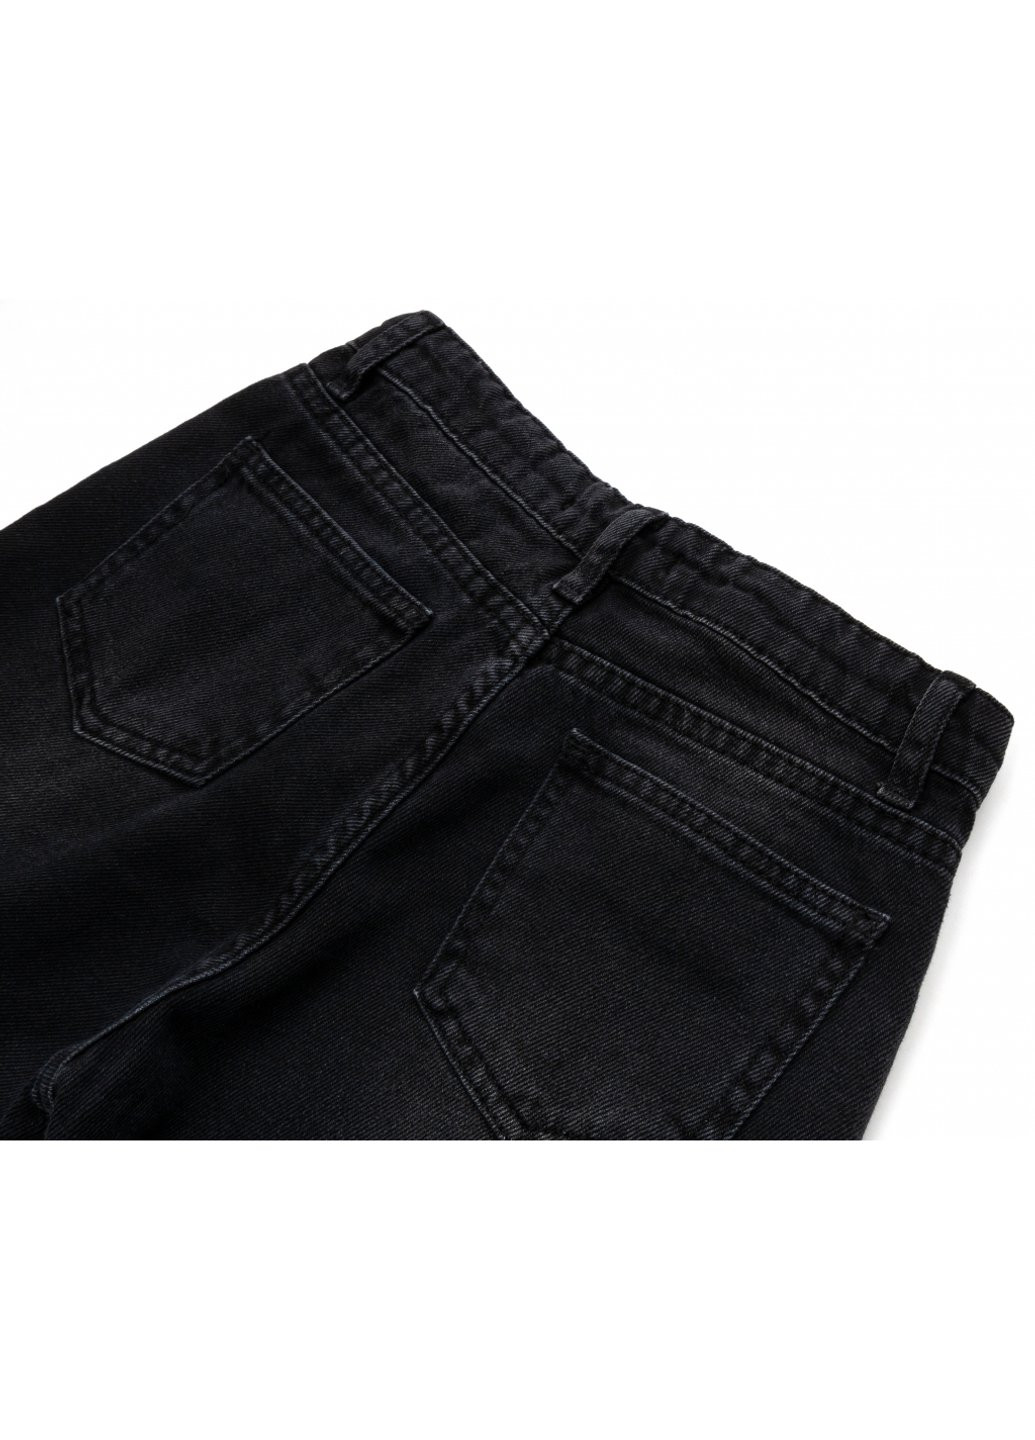 Черные демисезонные джинсы с потертостями (15557-158g-black) Breeze